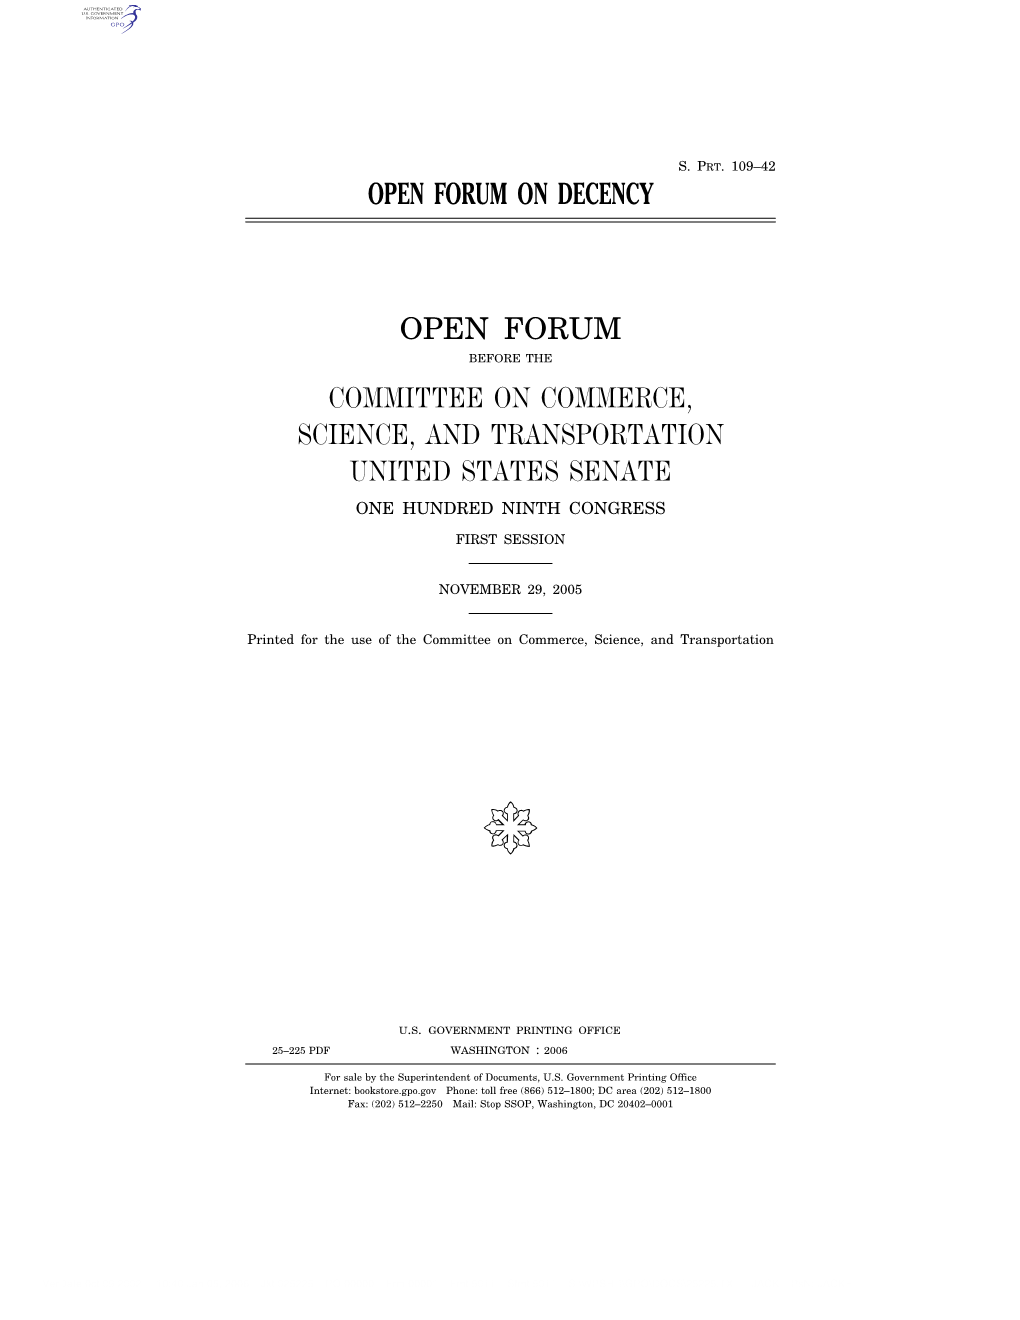 Open Forum on Decency Open Forum Committee On